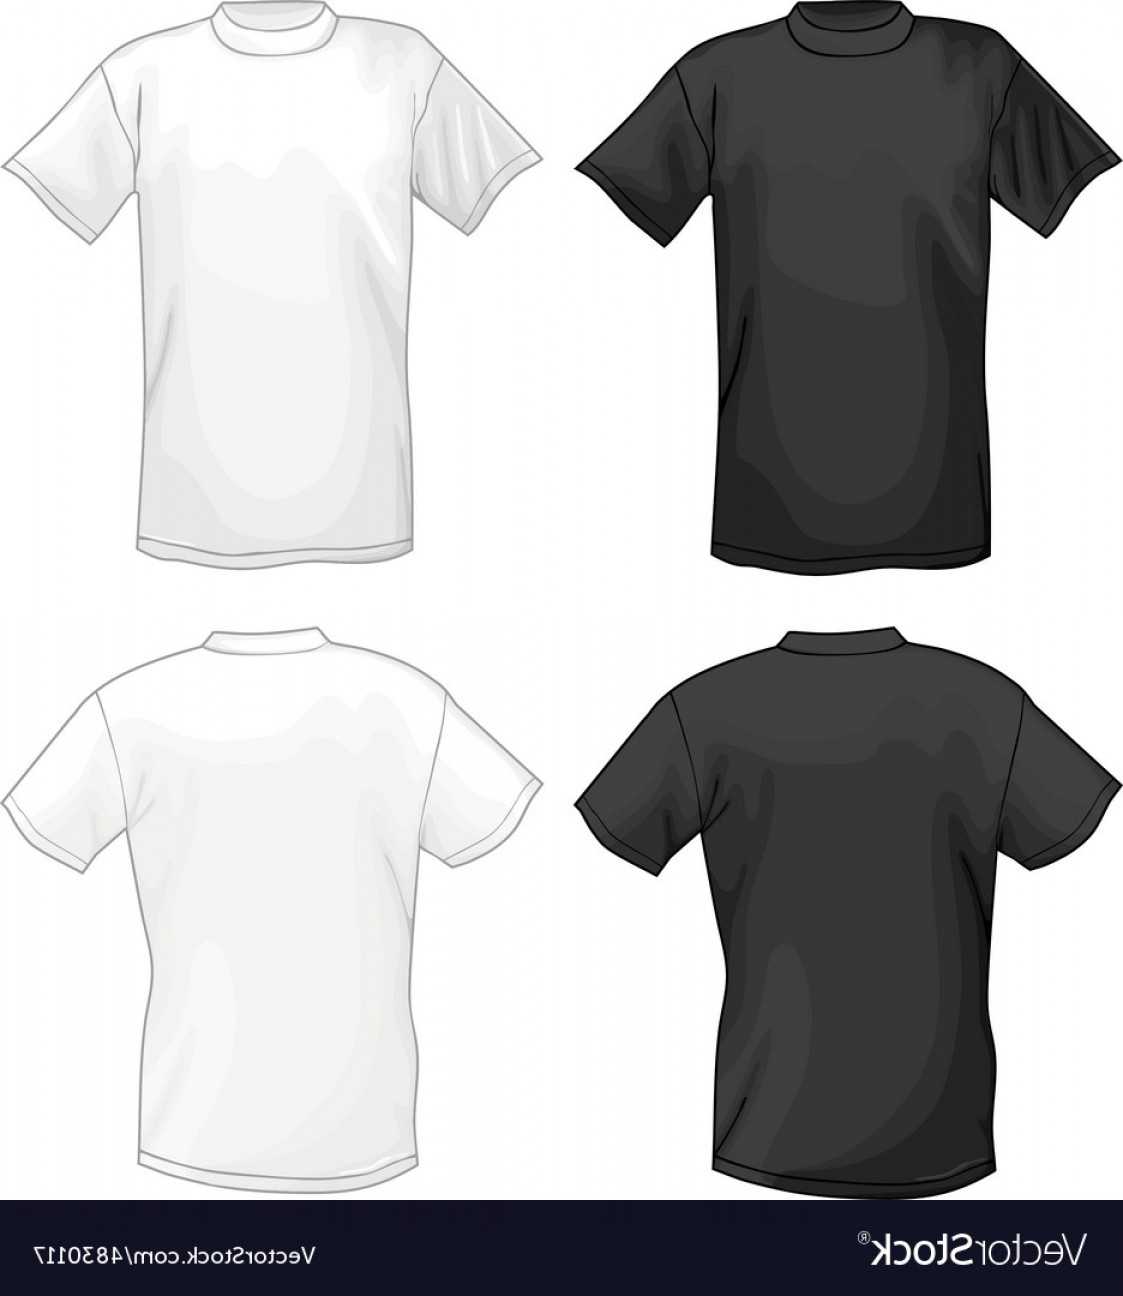 029 Template Ideas T Shirt Design Templates Unusual Software Regarding Blank T Shirt Design Template Psd